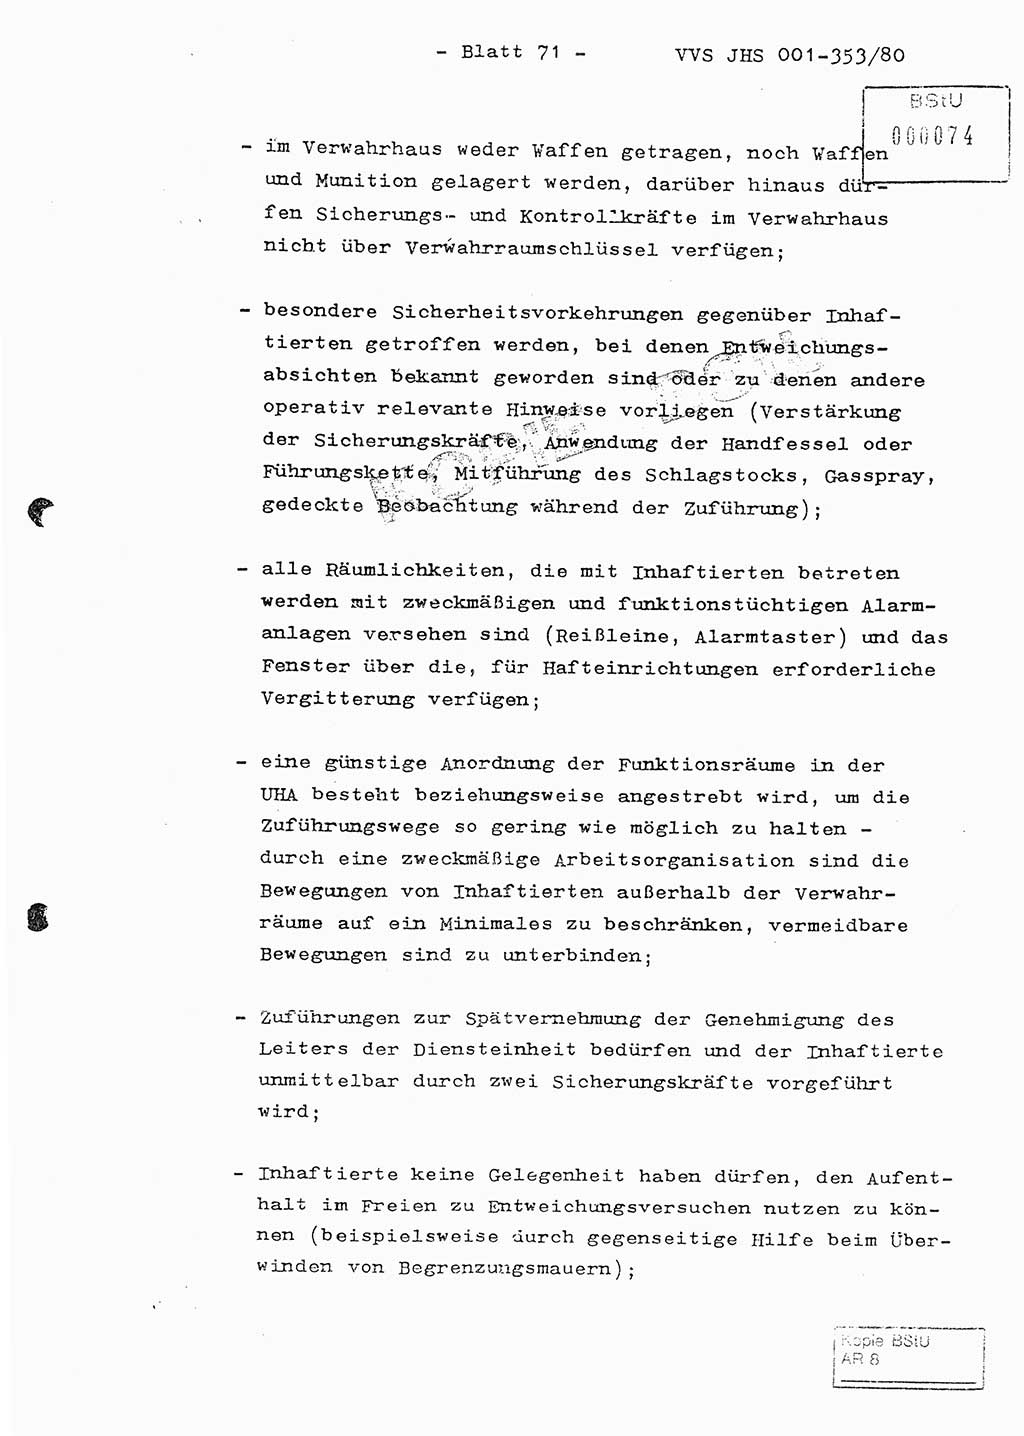 Diplomarbeit Hauptmann Joachim Klaumünzner (Abt. ⅩⅣ), Ministerium für Staatssicherheit (MfS) [Deutsche Demokratische Republik (DDR)], Juristische Hochschule (JHS), Vertrauliche Verschlußsache (VVS) o001-353/80, Potsdam 1980, Blatt 71 (Dipl.-Arb. MfS DDR JHS VVS o001-353/80 1980, Bl. 71)